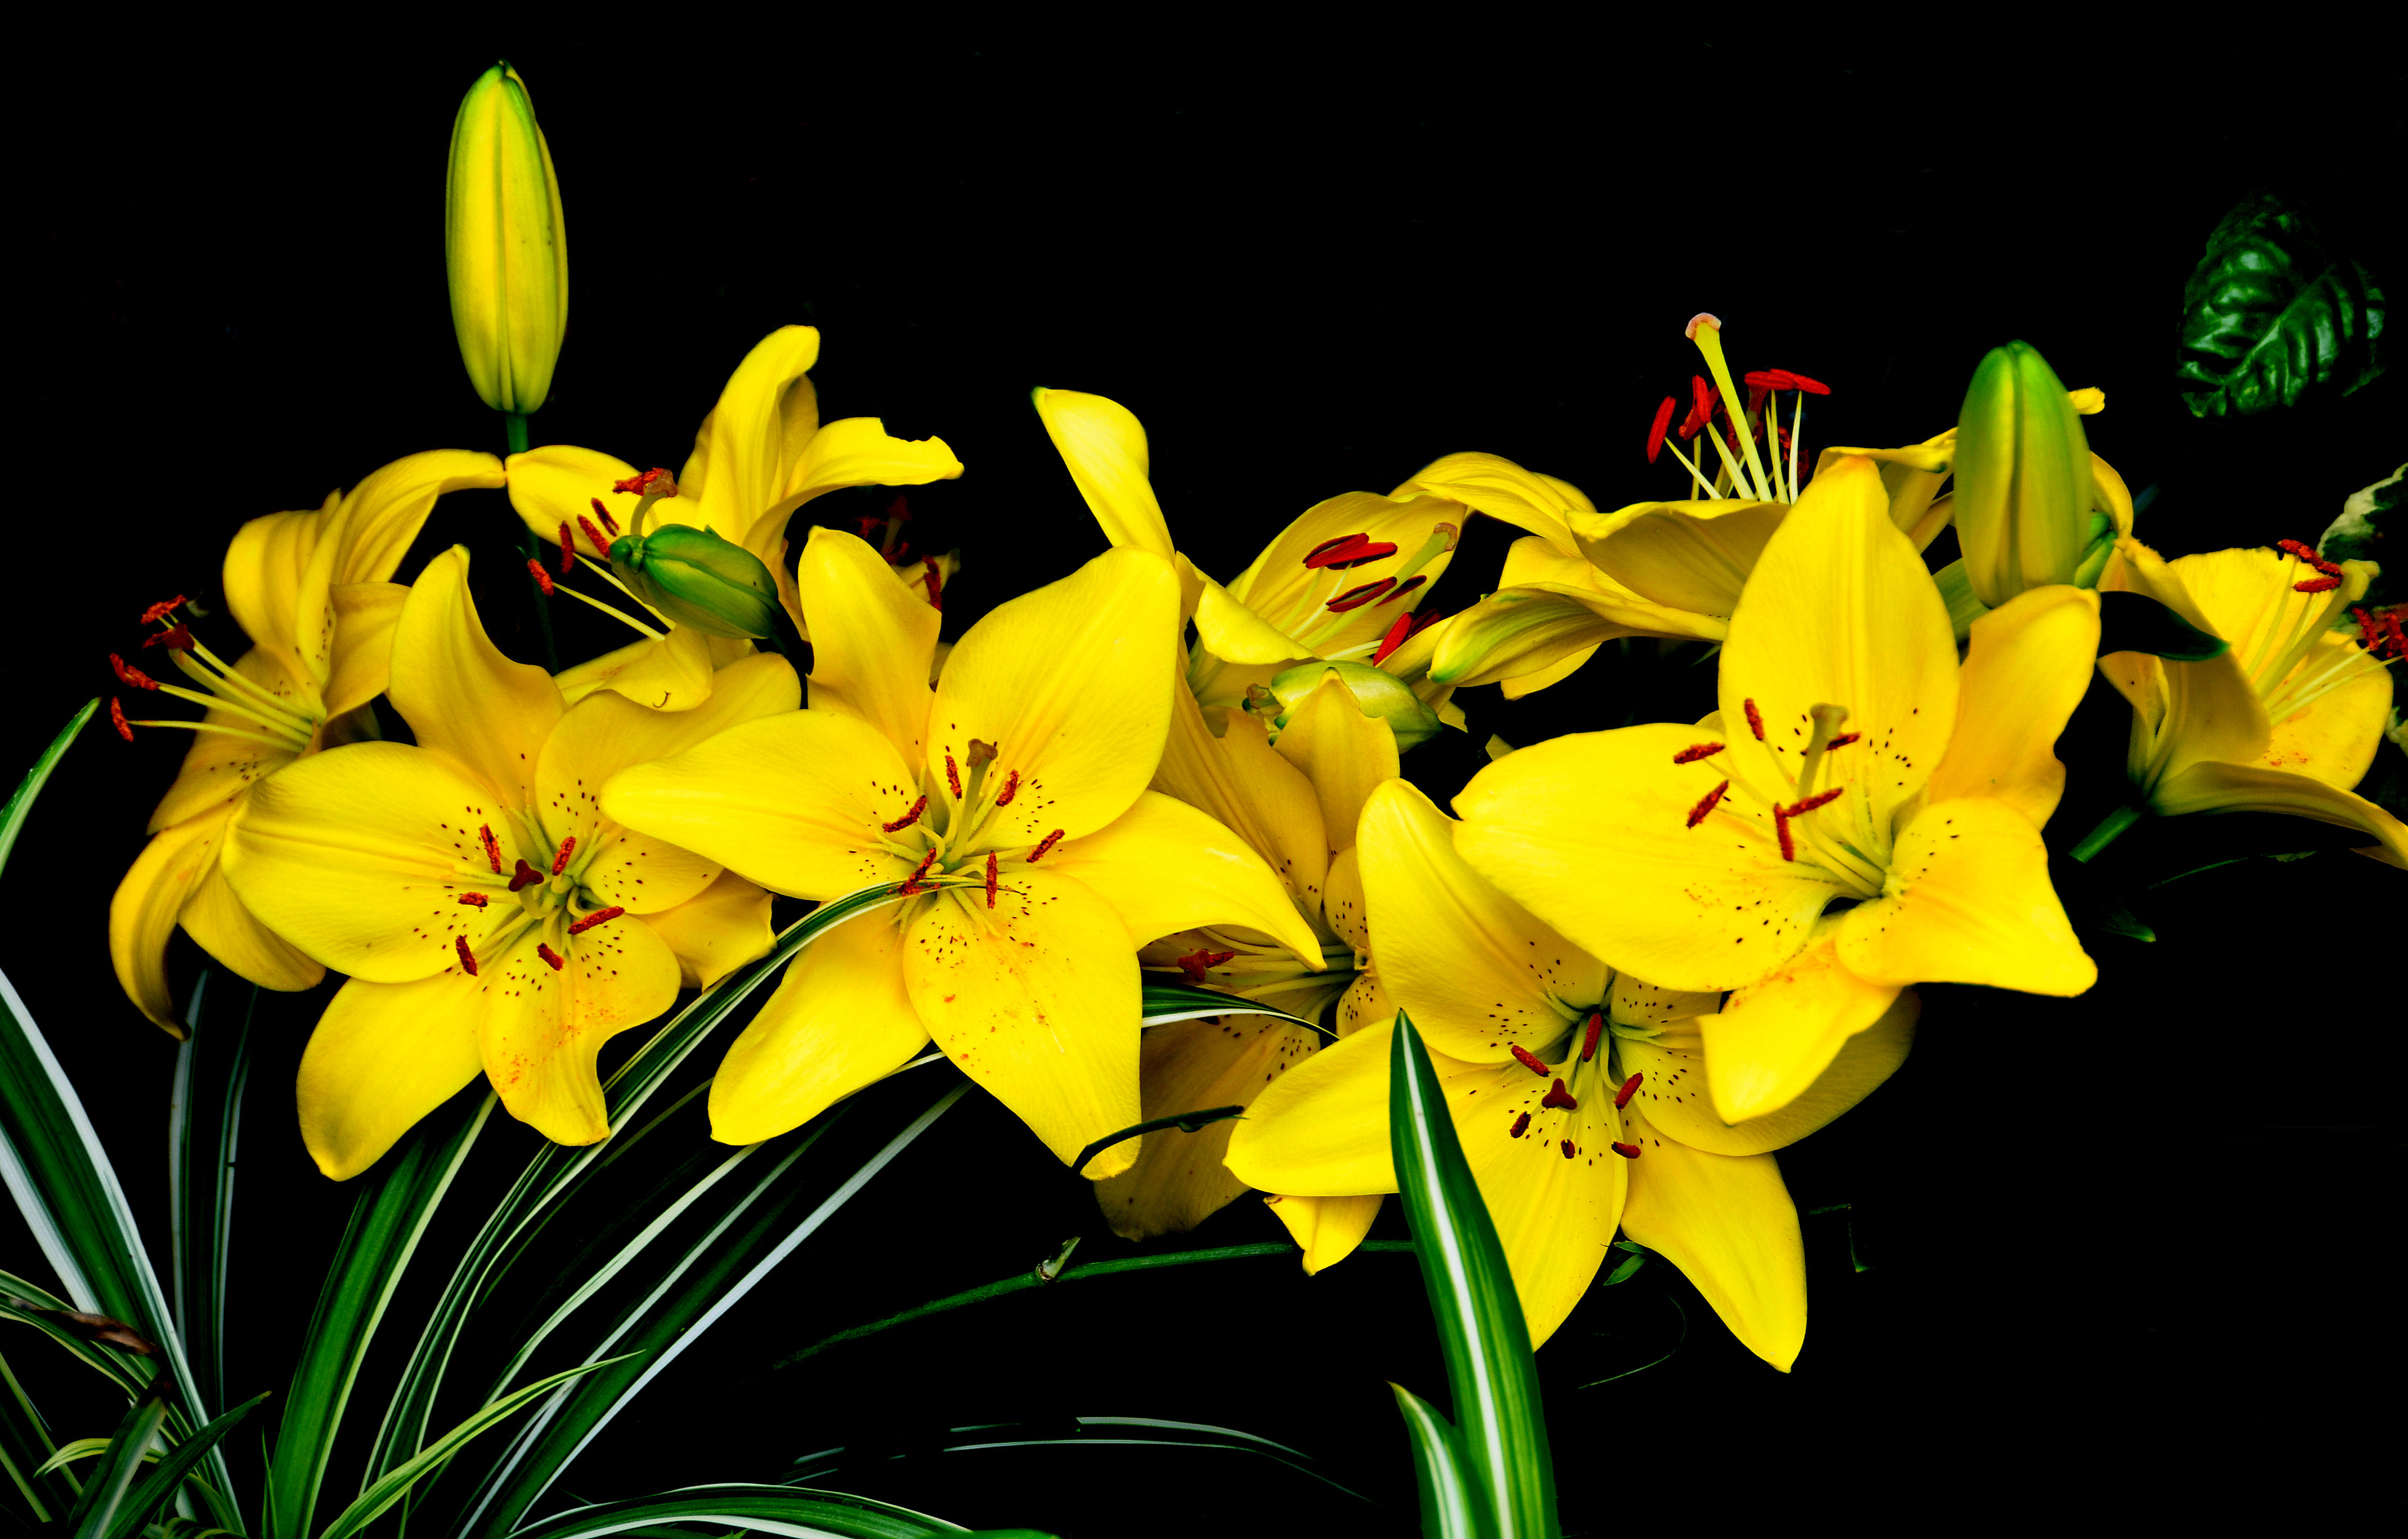 Фото желтые цветы желтые лилии цветы - бесплатные картинки на Fonwall